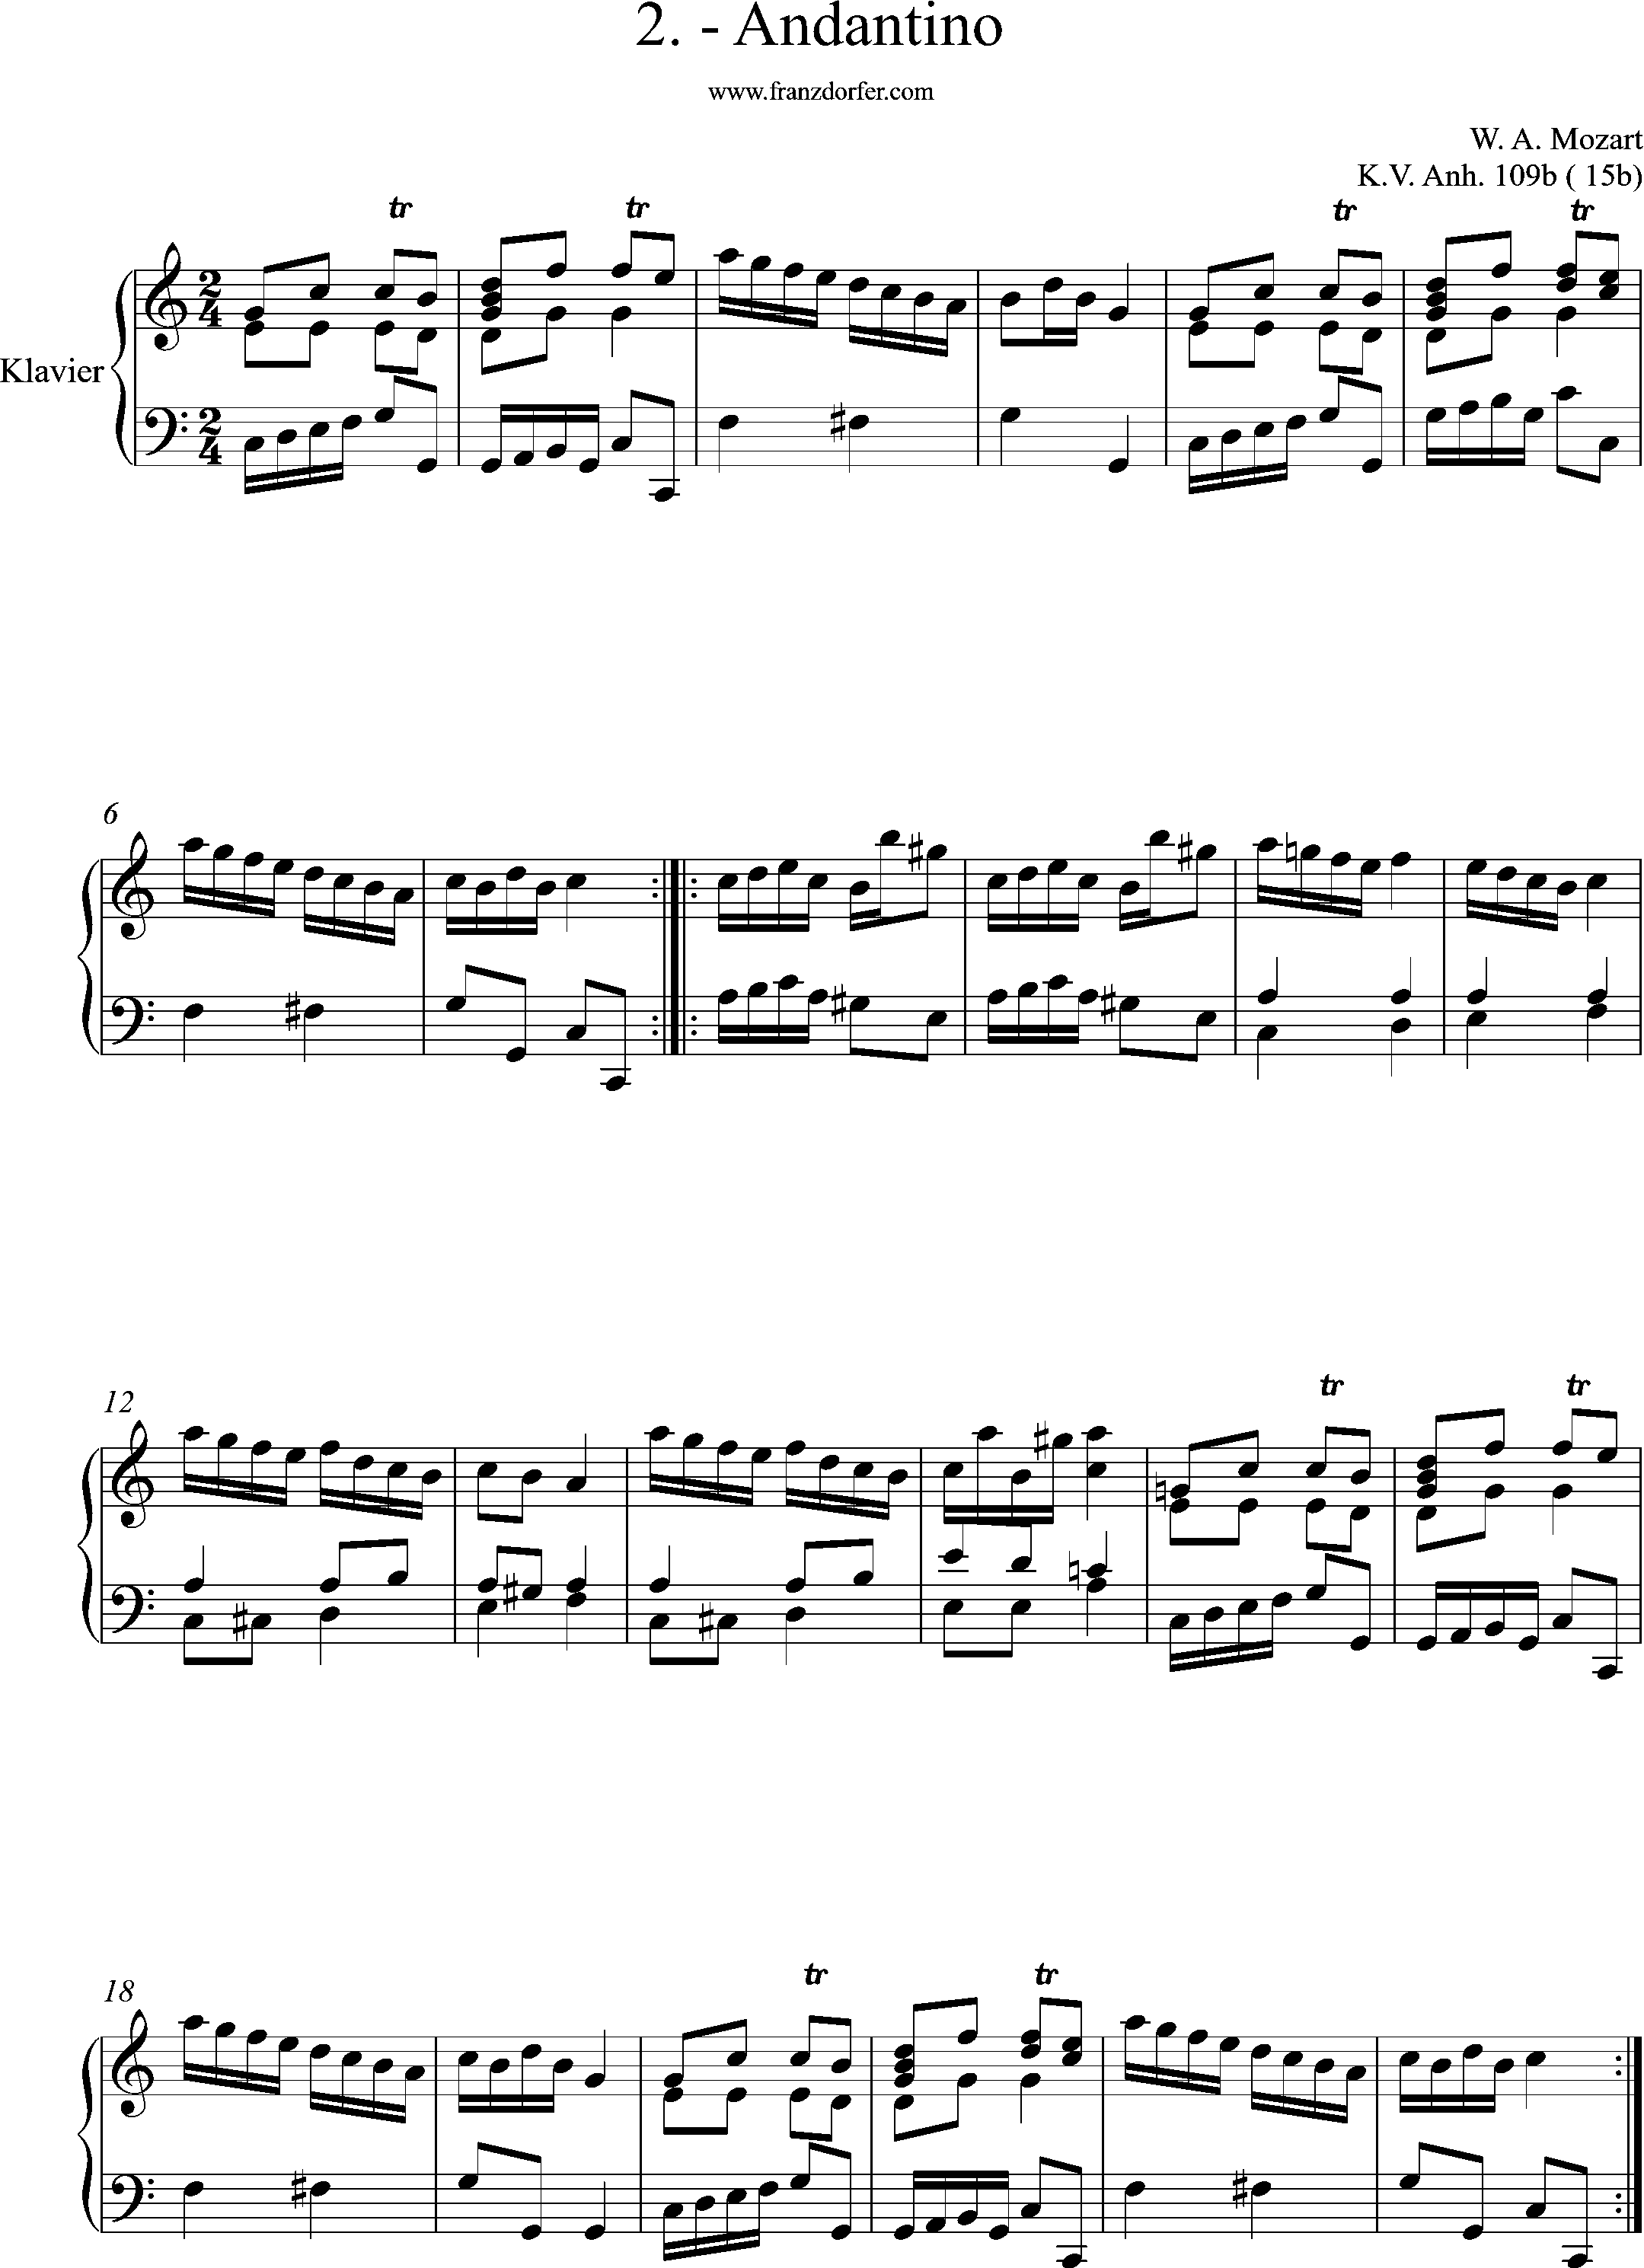 KV. anhang 109b- 15b, No. 2- Andantiono, Mozart